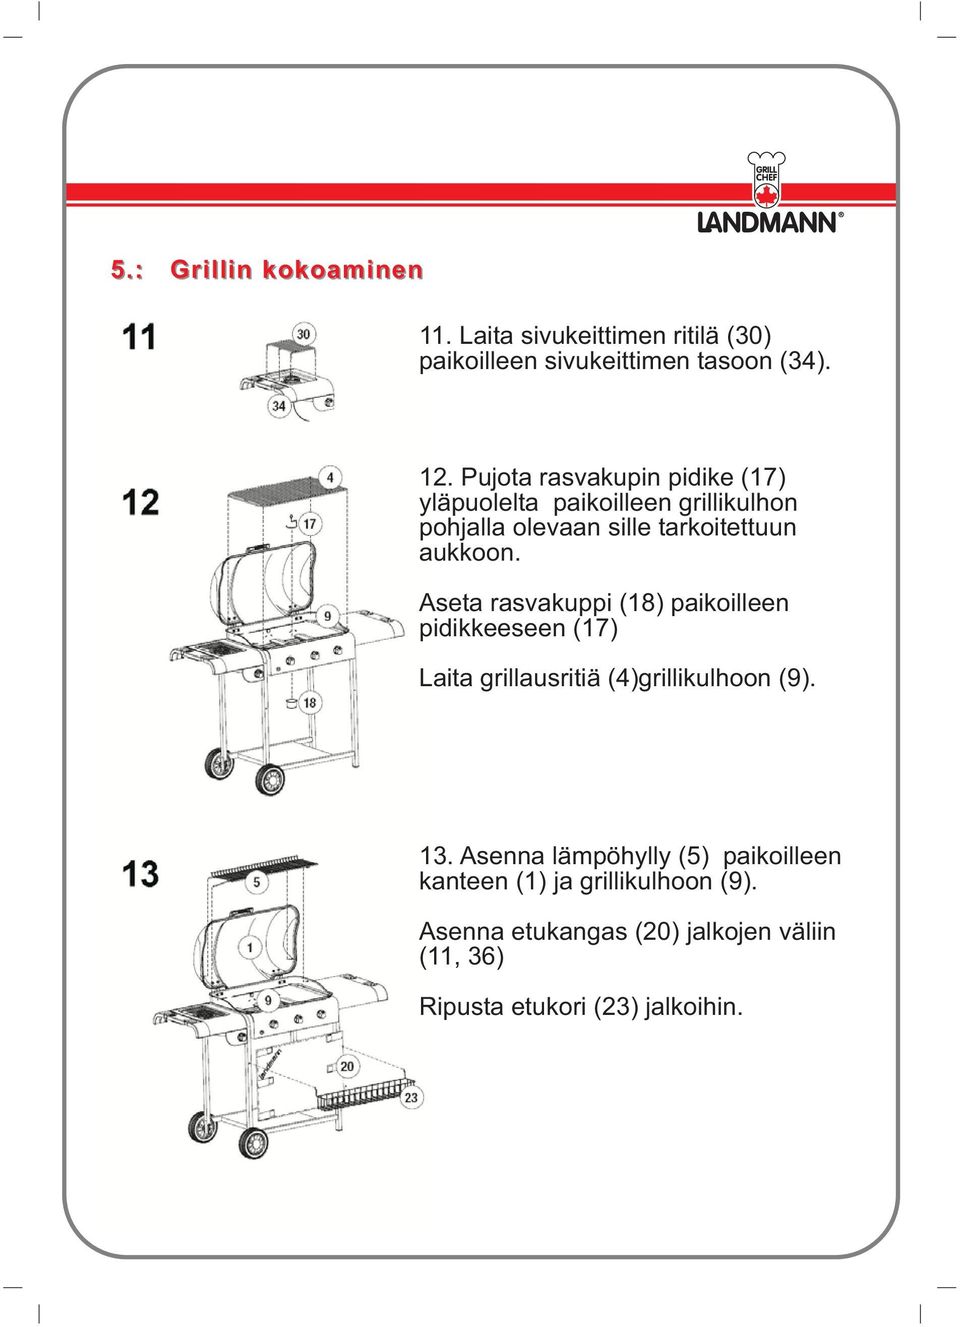 Aseta rasvakuppi (18) paikoilleen pidikkeeseen (17) Laita grillausritiä (4)grillikulhoon (9). 13.